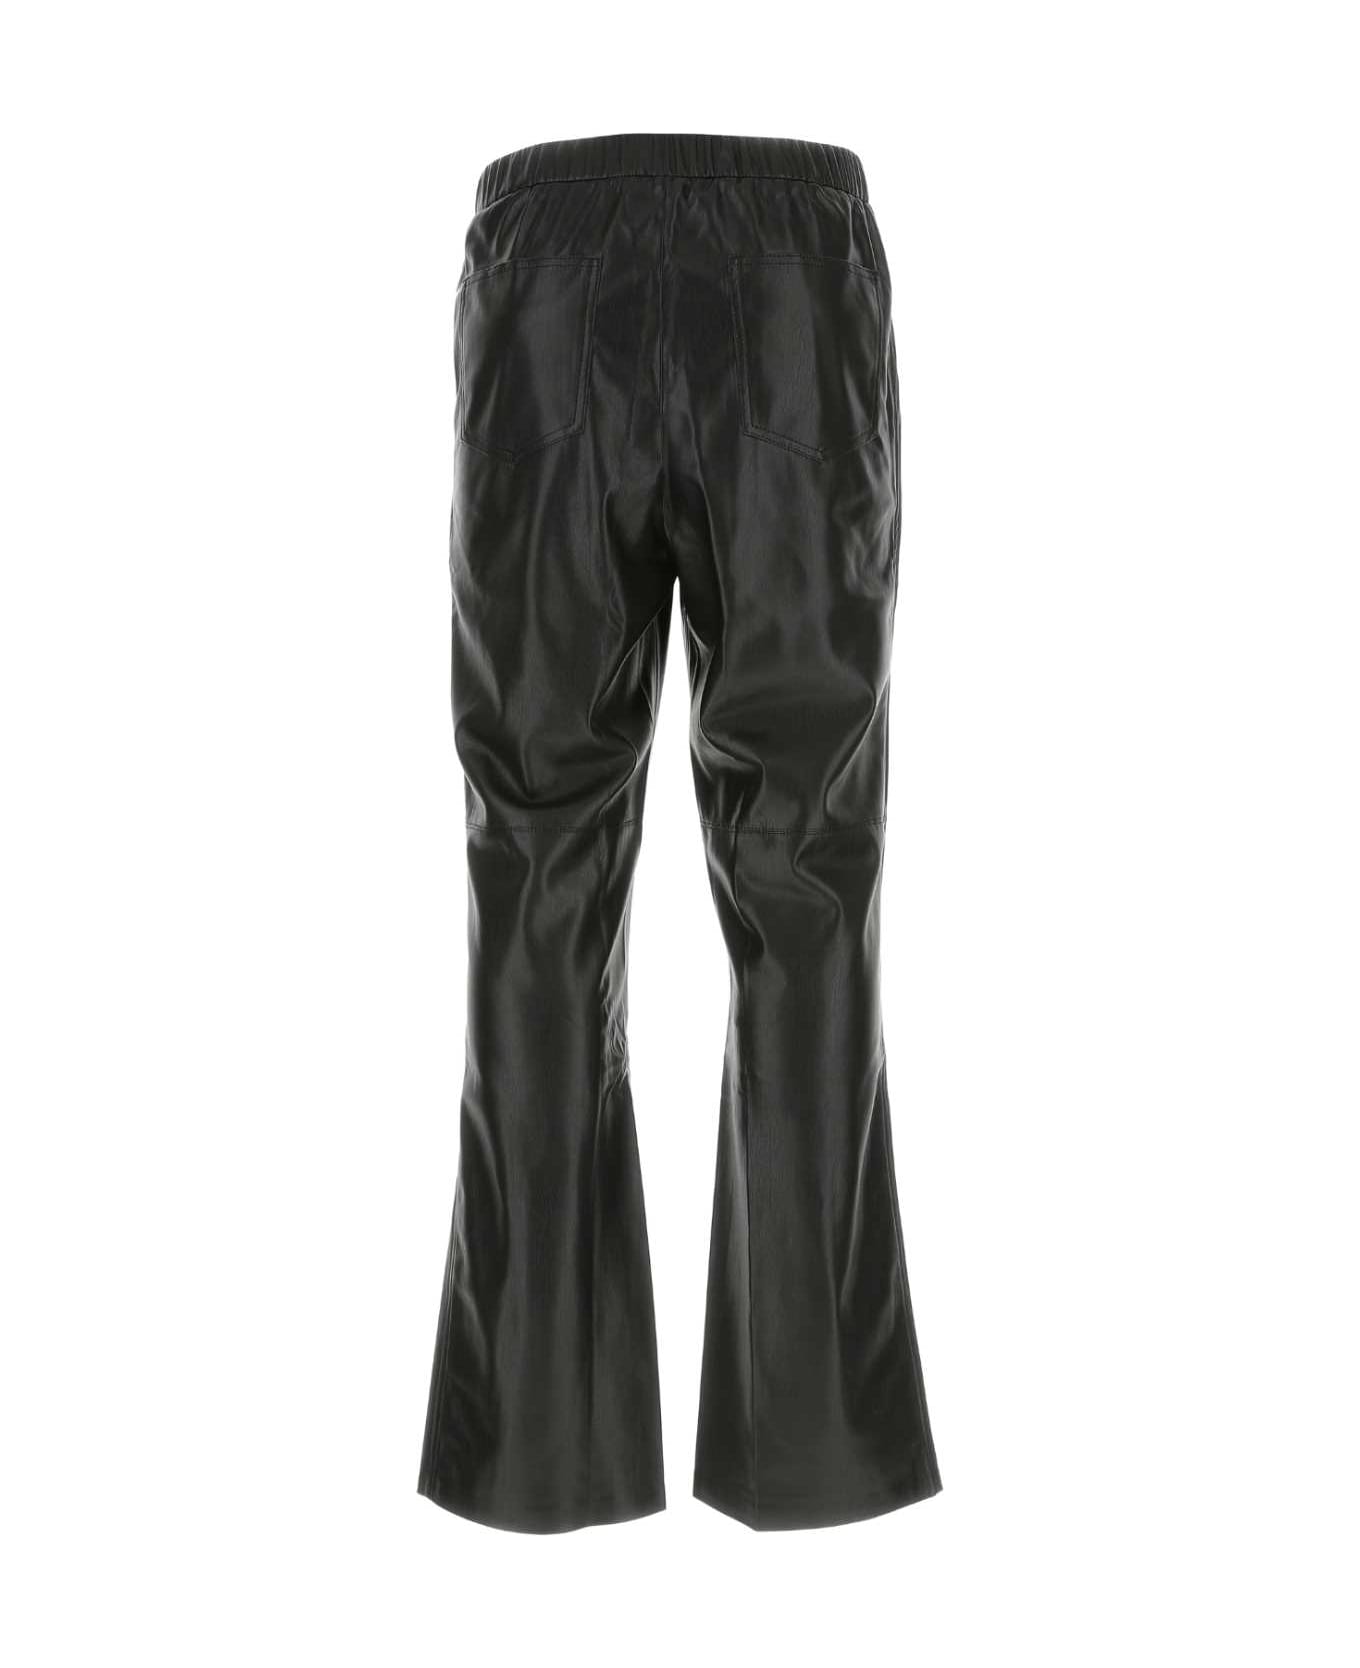 Nanushka Black Synthetic Leather Maven Pant - BLACK ボトムス